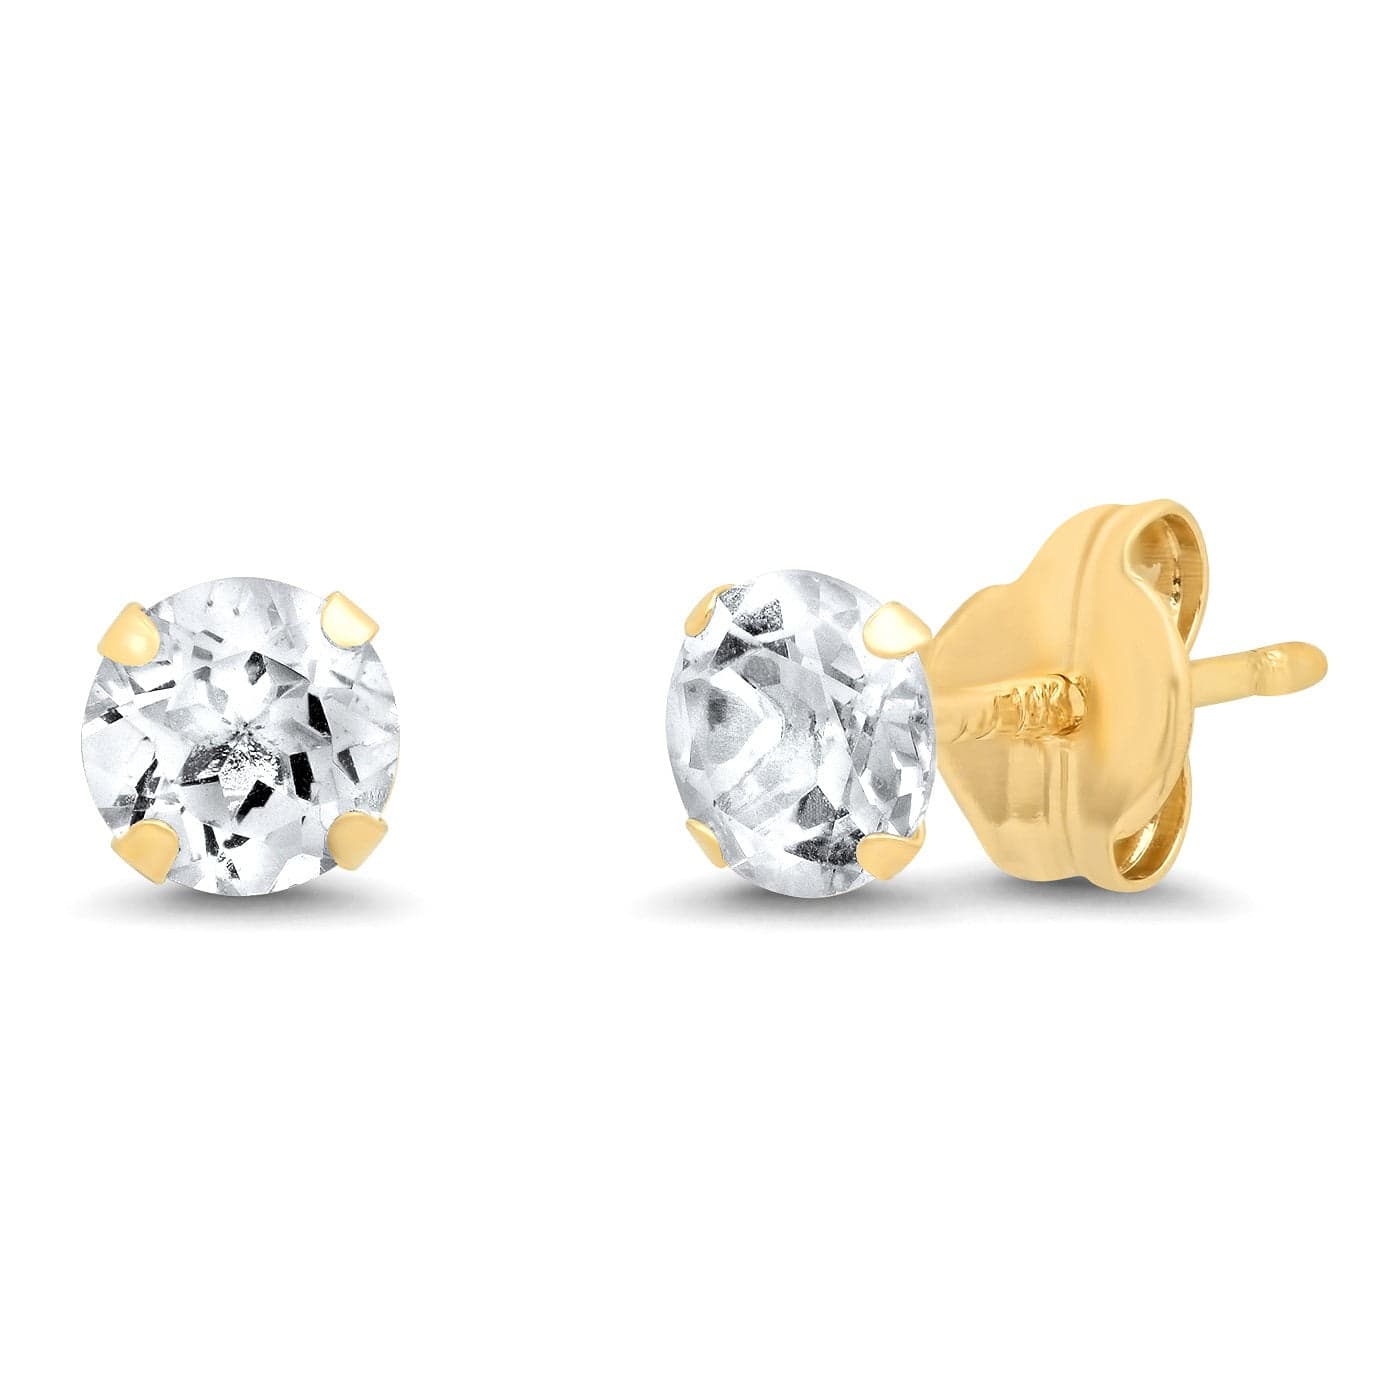 TAI JEWELRY Earrings 14k Gold 14k Topaz Earrings | 4mm